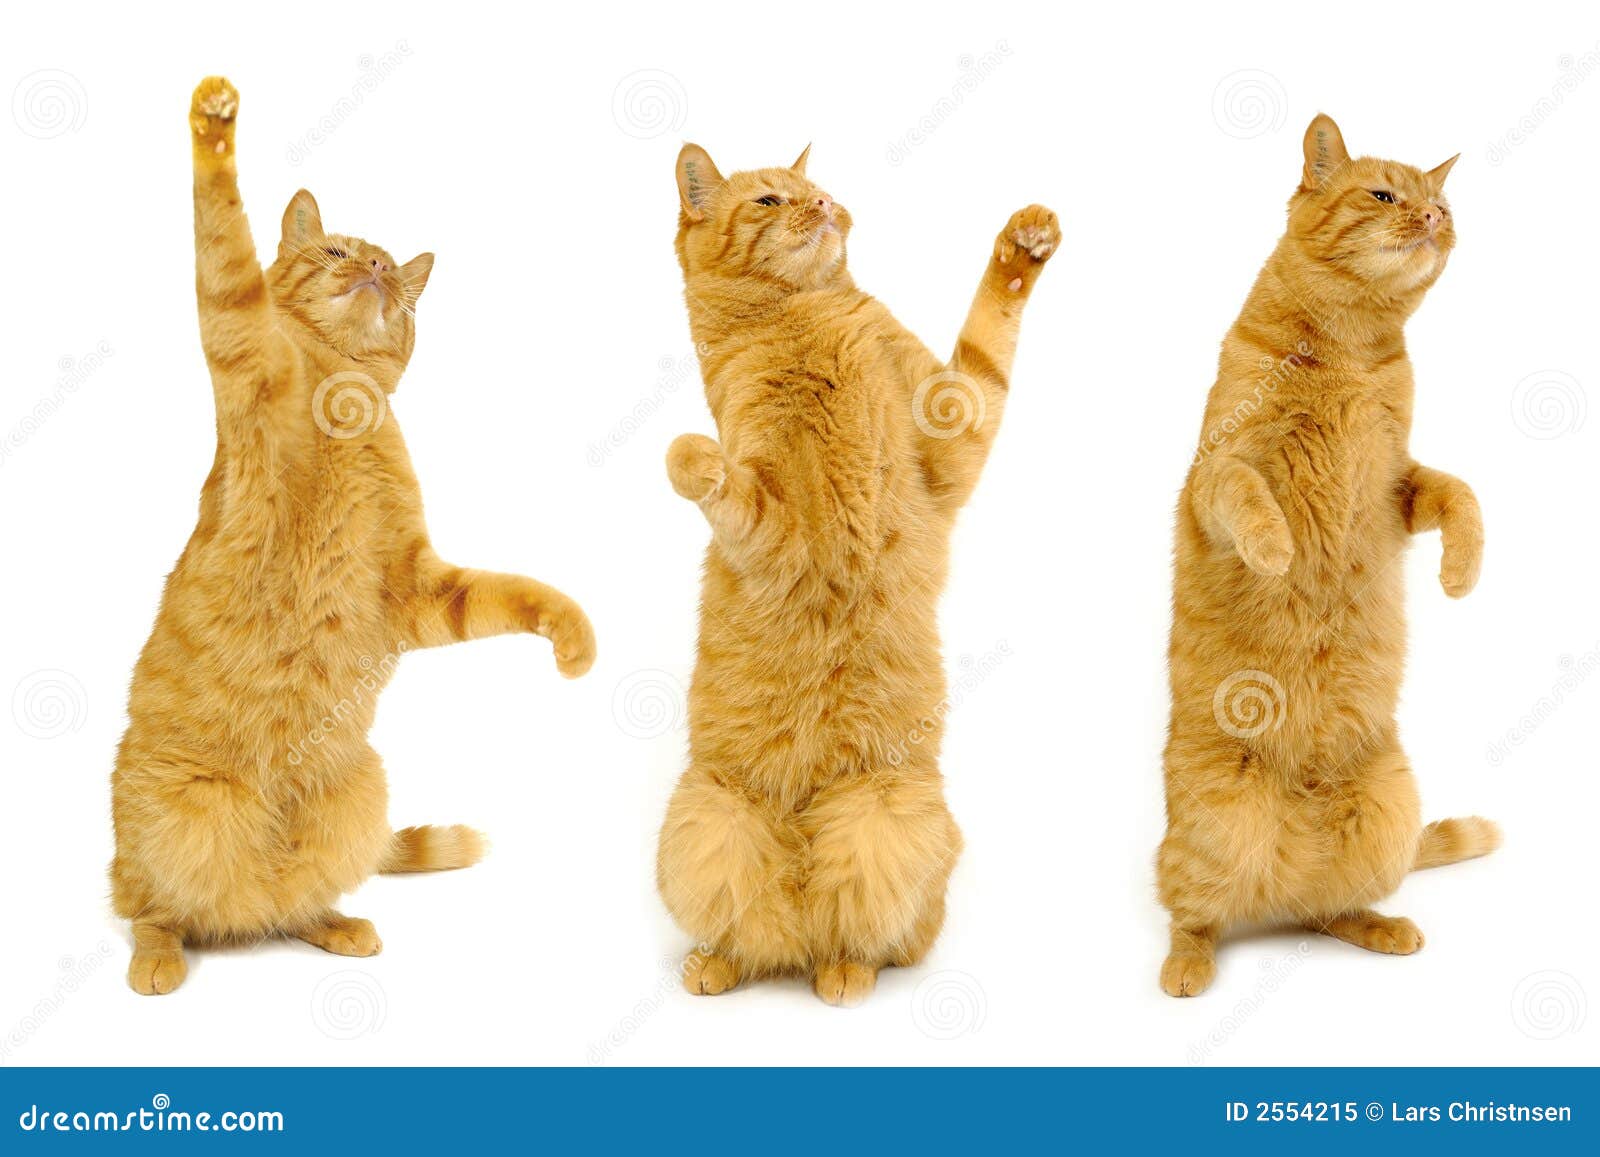 Котики на лапках стоят. Кот на задних лапах. Котик стоит на задних лапах. Котик танцует. Рыжий кот на задних лапах.